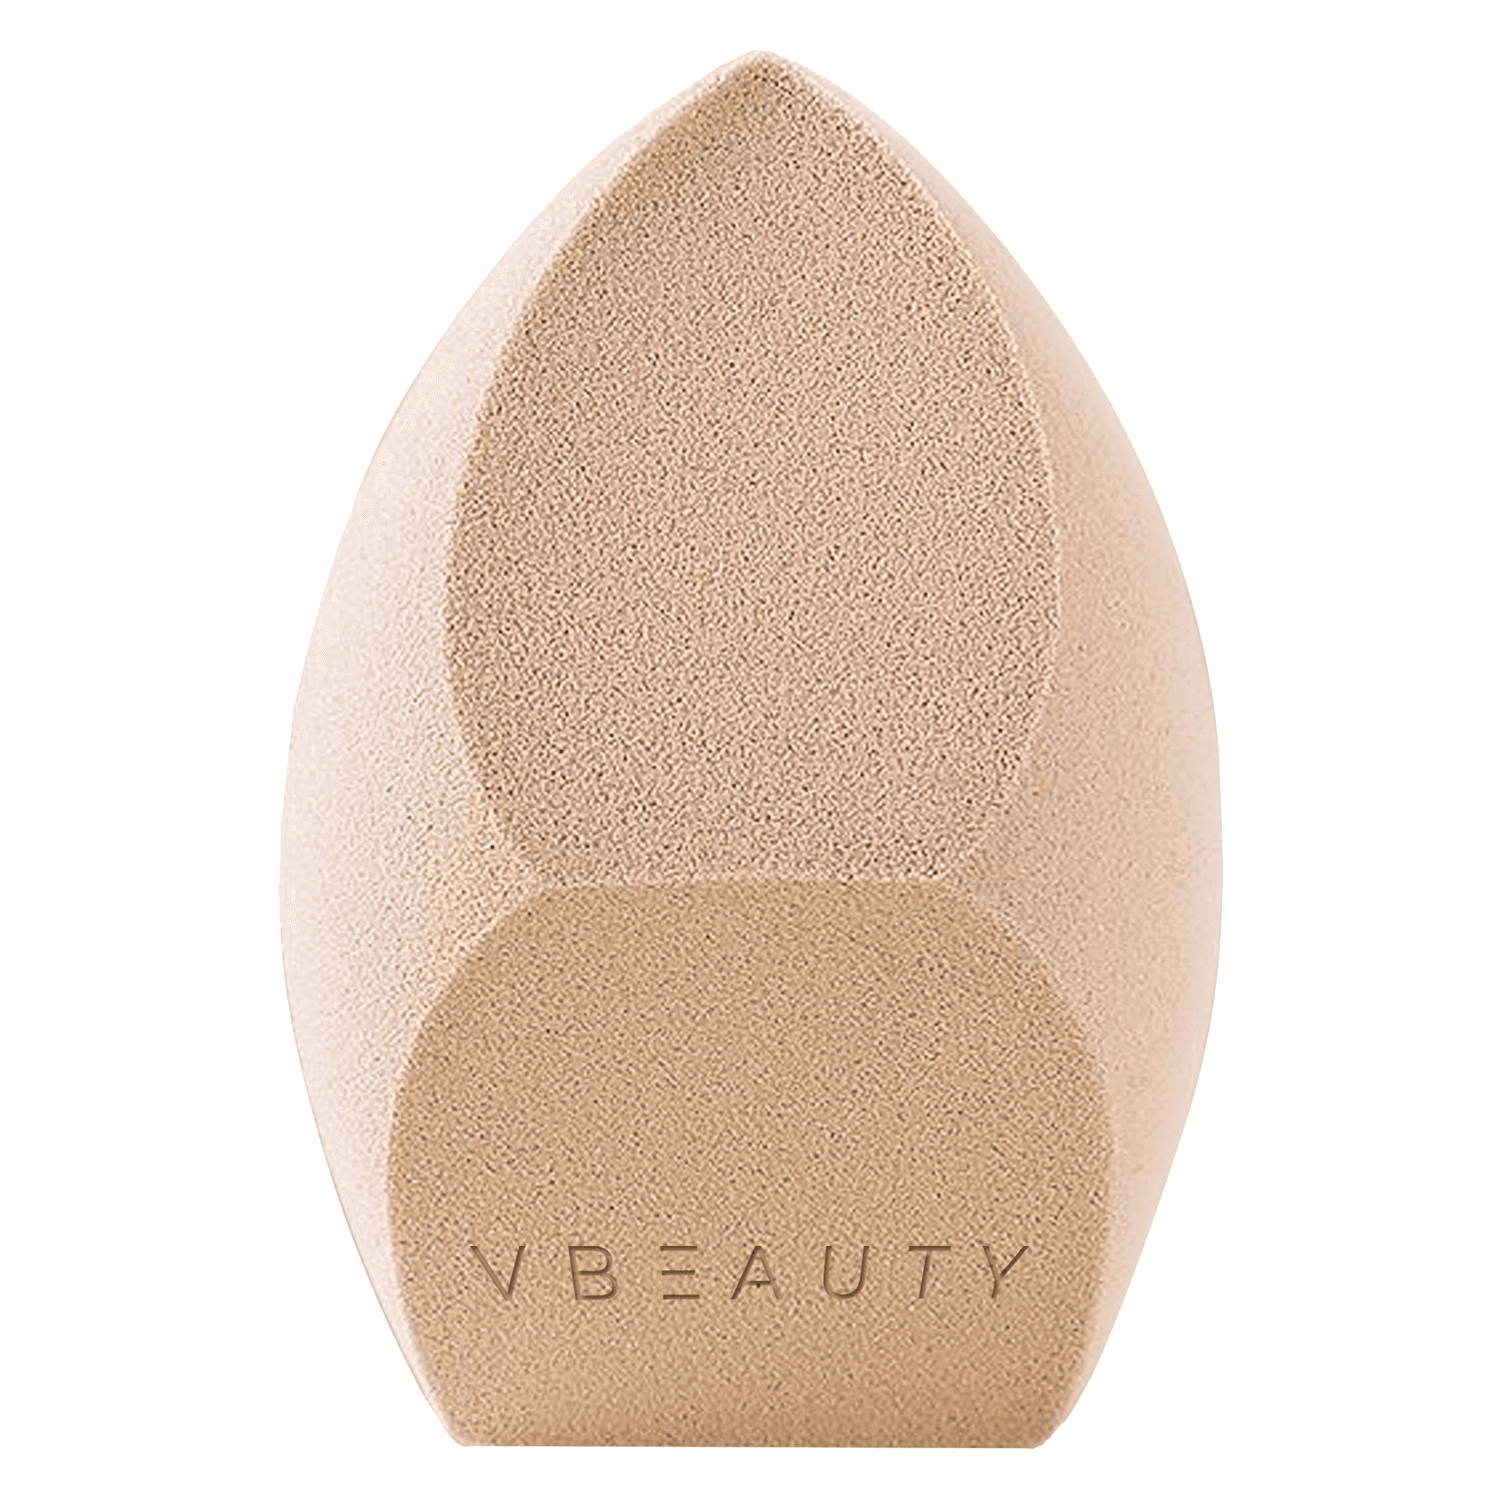 VBEAUTY Make Up - Foundation BIG XXL Sponge